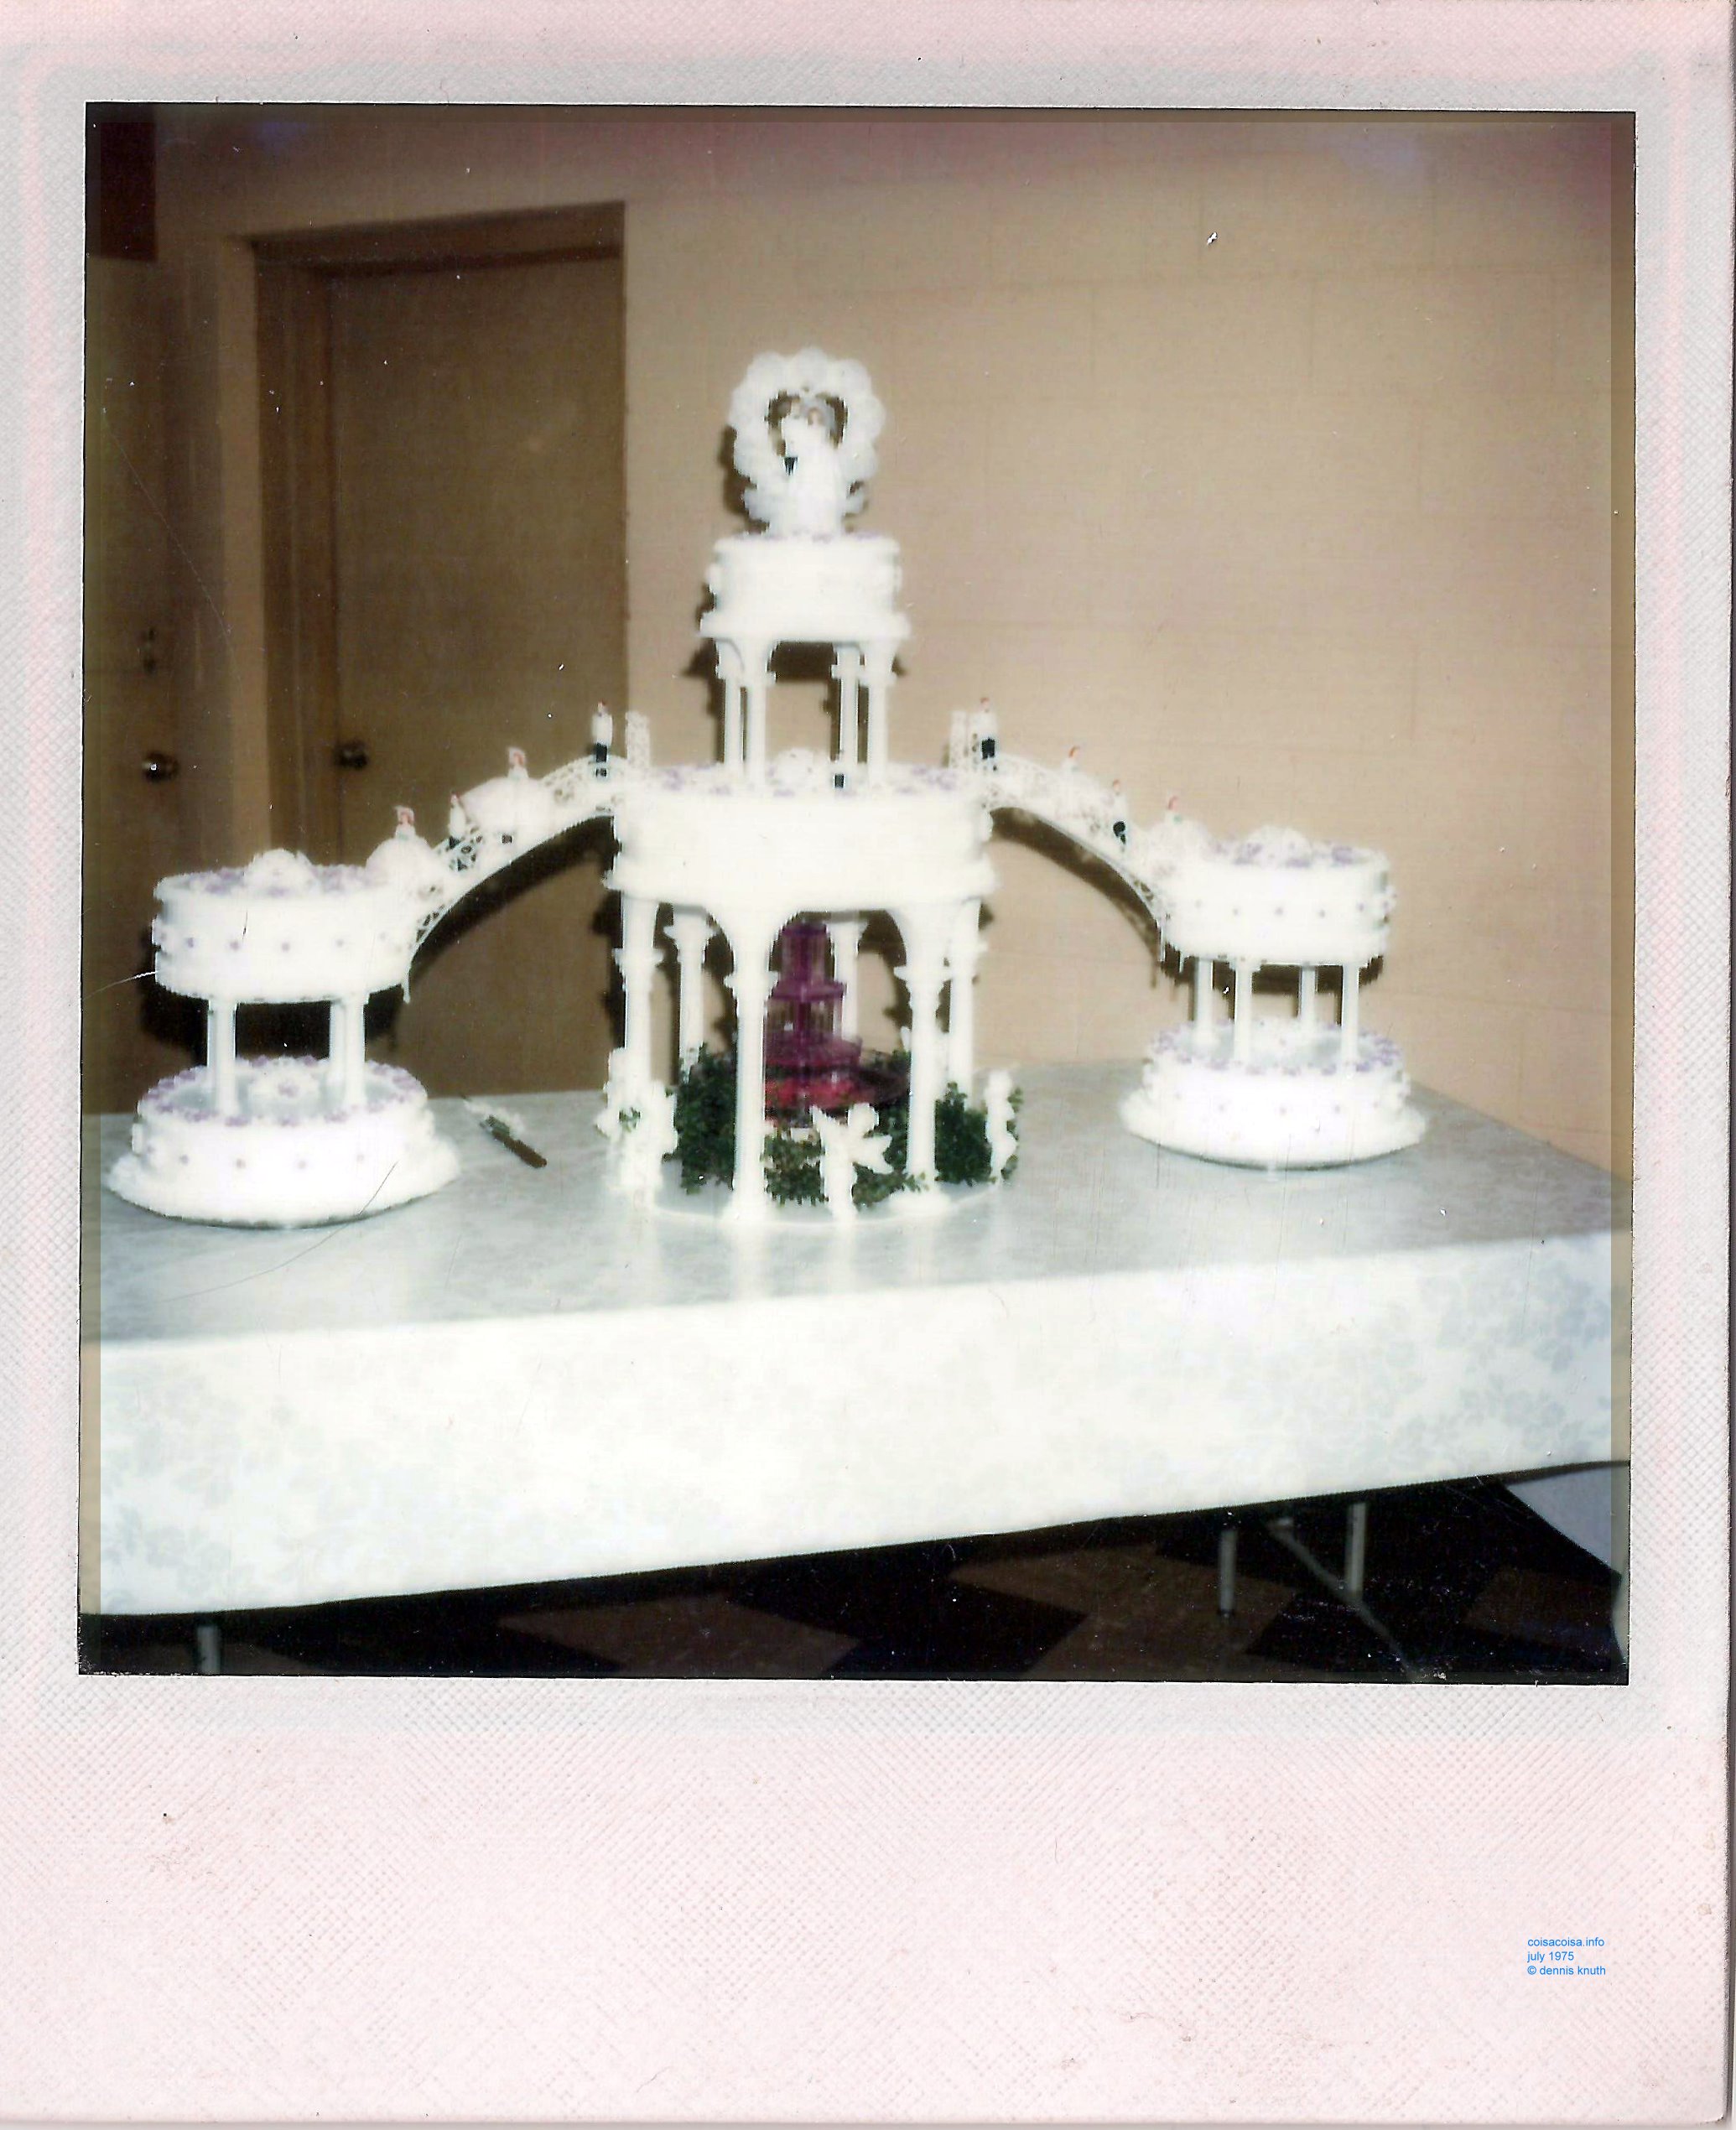 Sherri's wedding cake in 1975